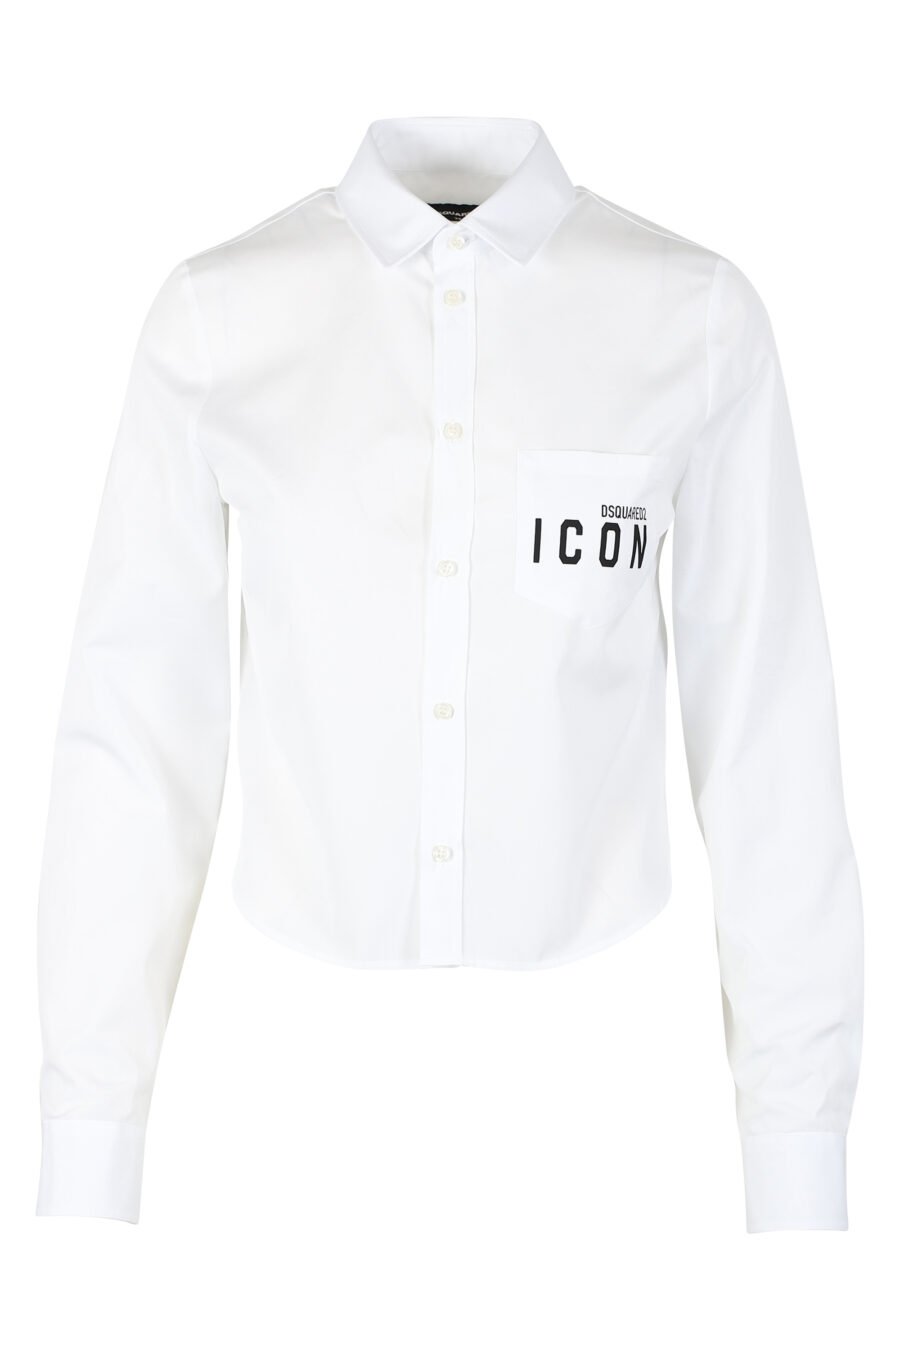 Kurzes weißes Hemd mit doppeltem Icon-Minilog - IMG 9793